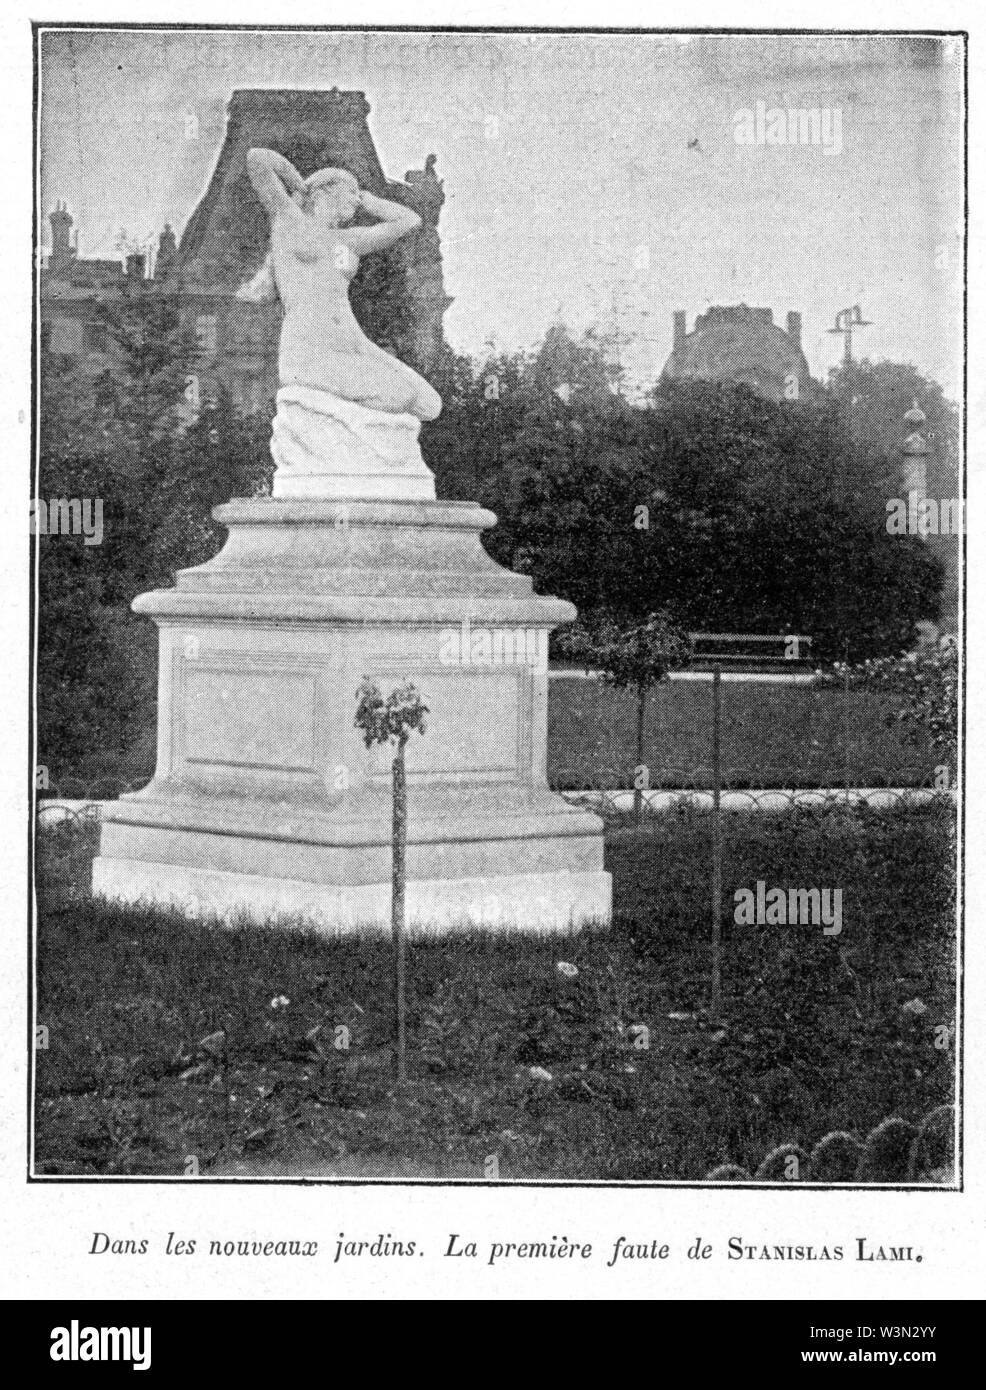 Clément Maurice Paris en plein air, BUC, 1897,051 Dans les nouveaux Jardins, La Première faute de STANISLAS LAMI. Stockfoto